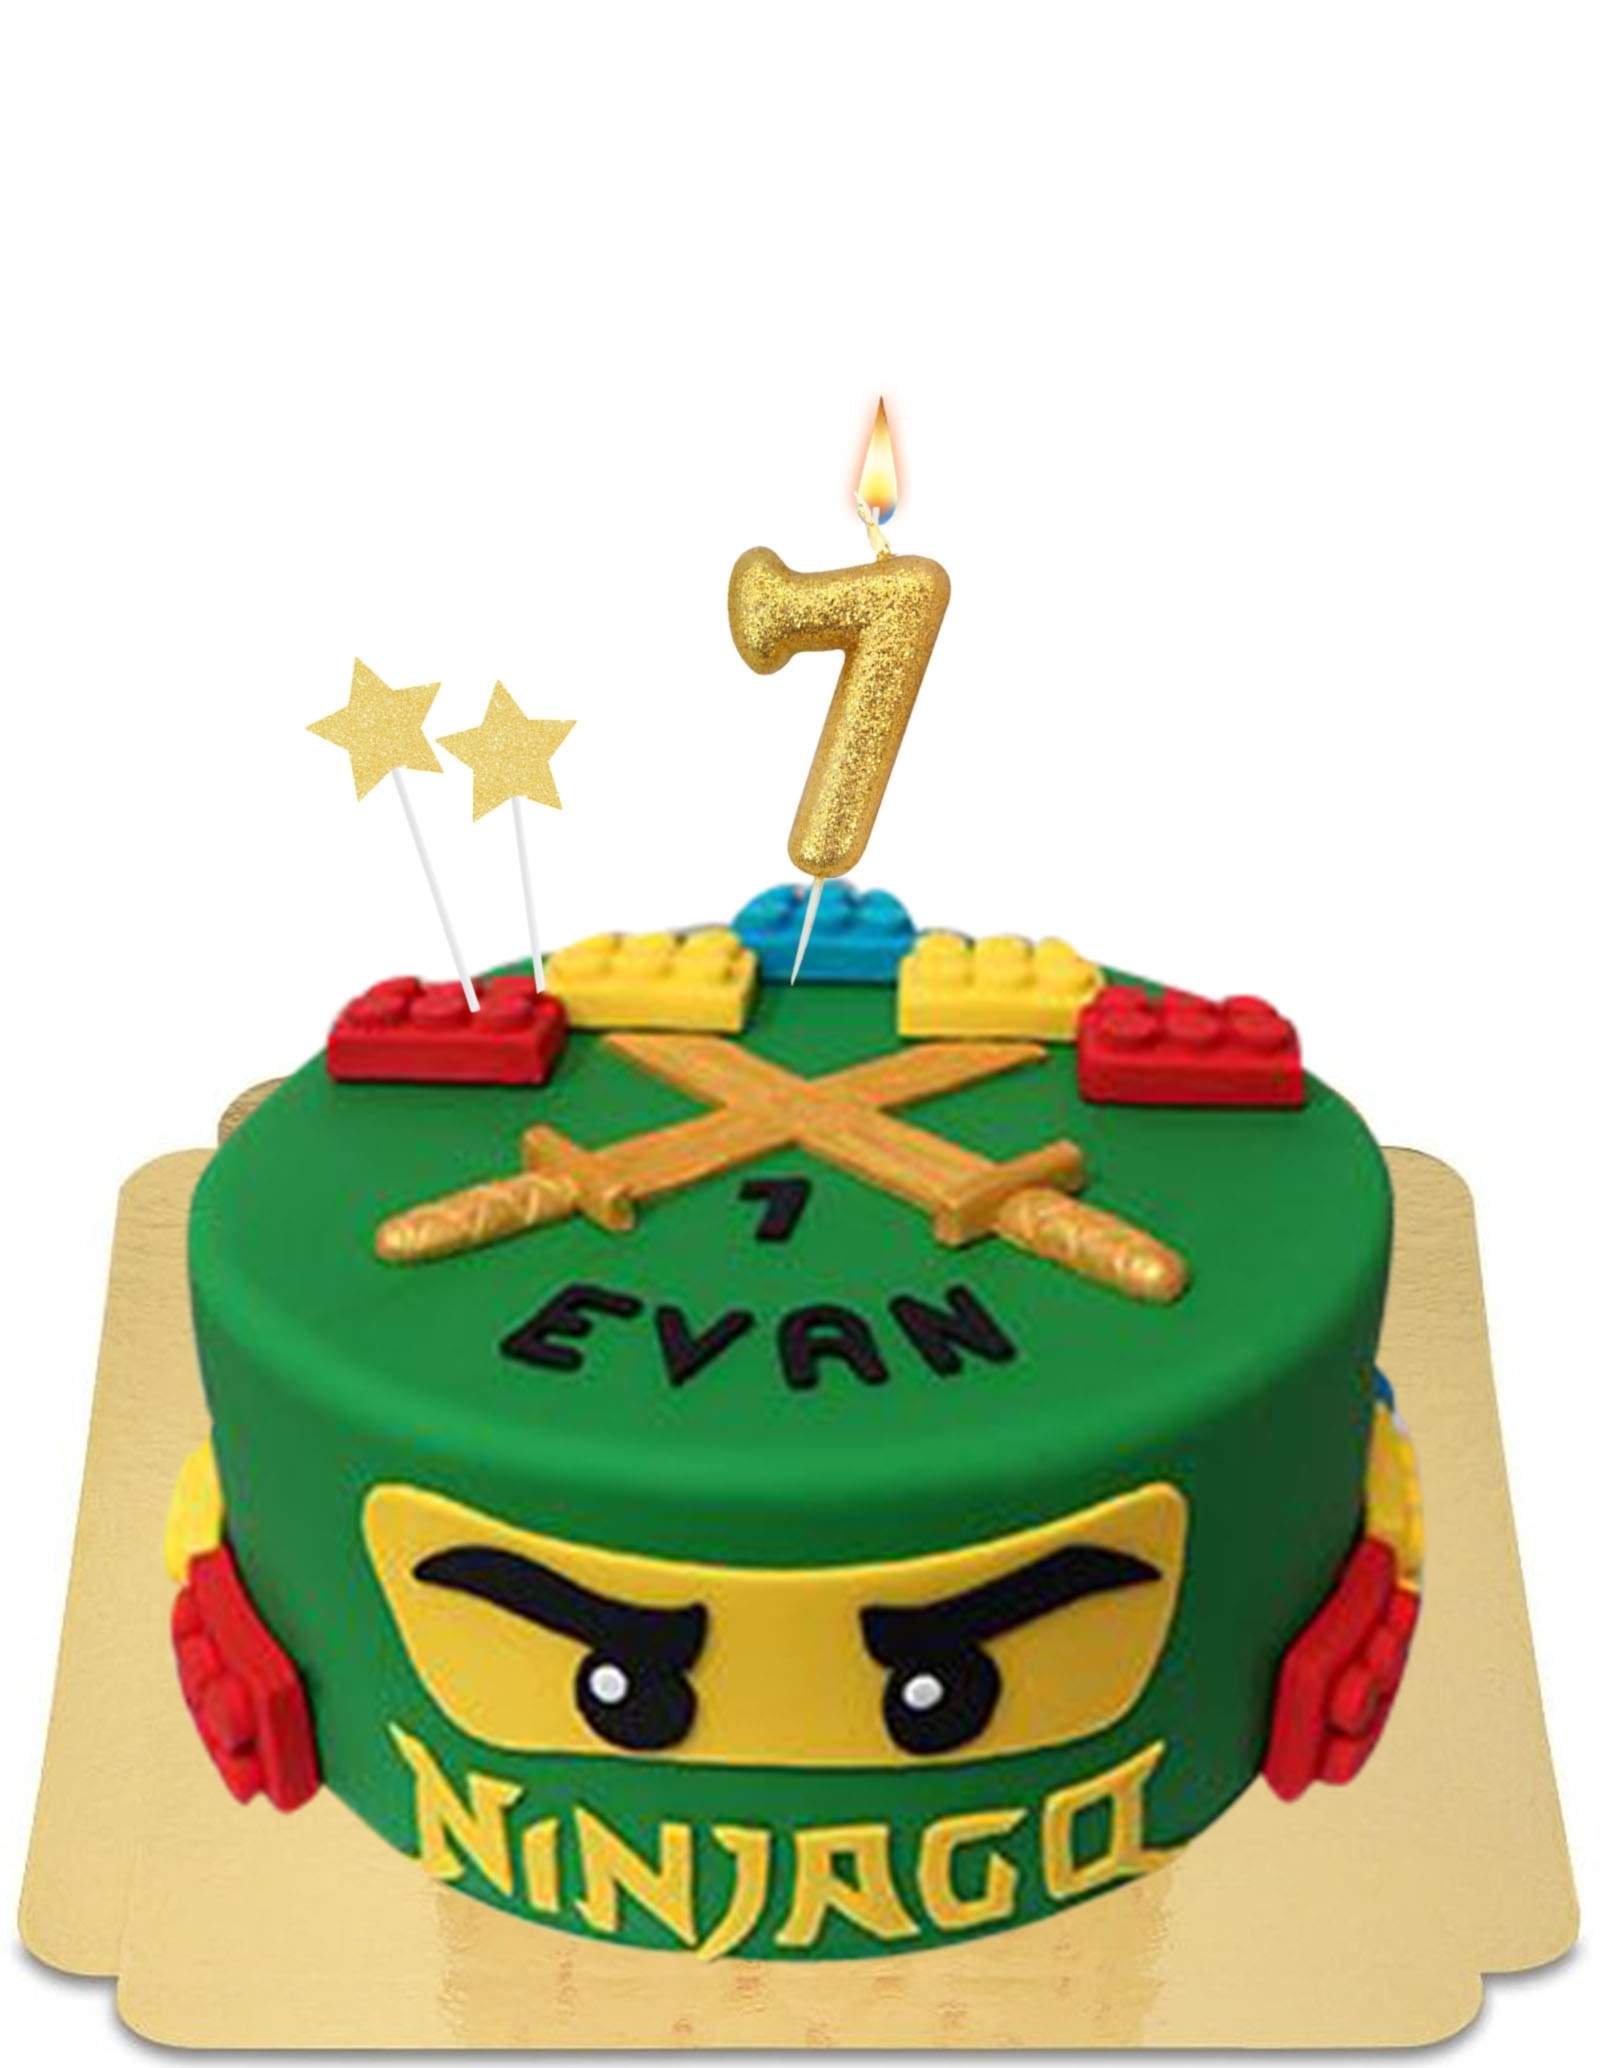 Commander votre Gâteau d’anniversaire Lego, Ninjago en ligne